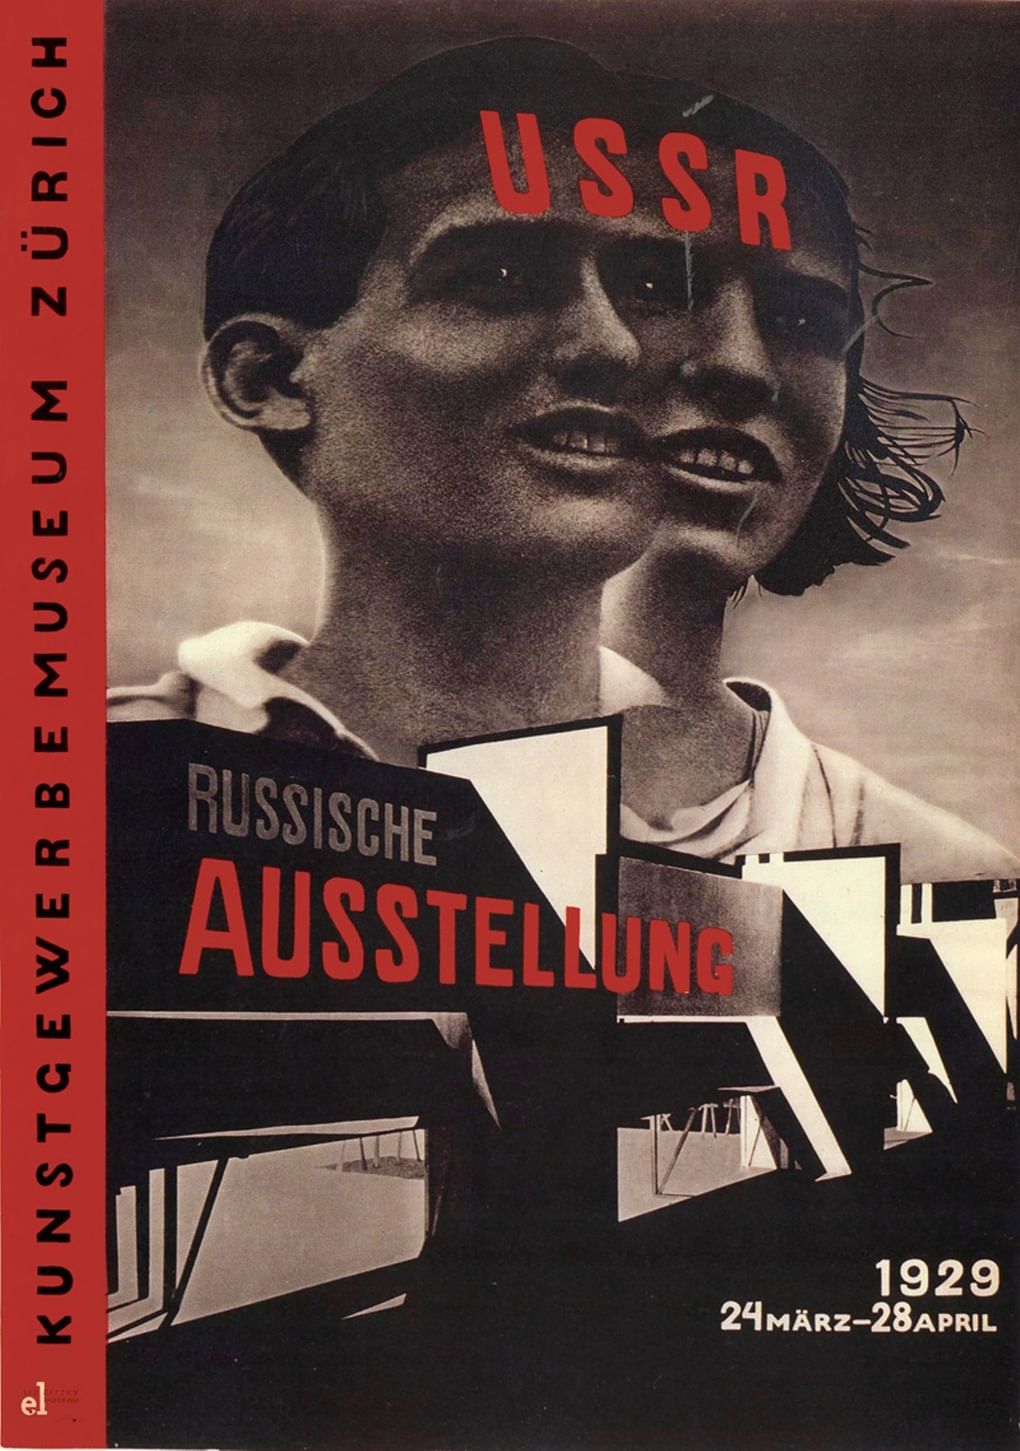 Эль Лисицкий. Плакат первой советской выставки в Швейцарии. 1929. Изображение: famous.totalarch.com